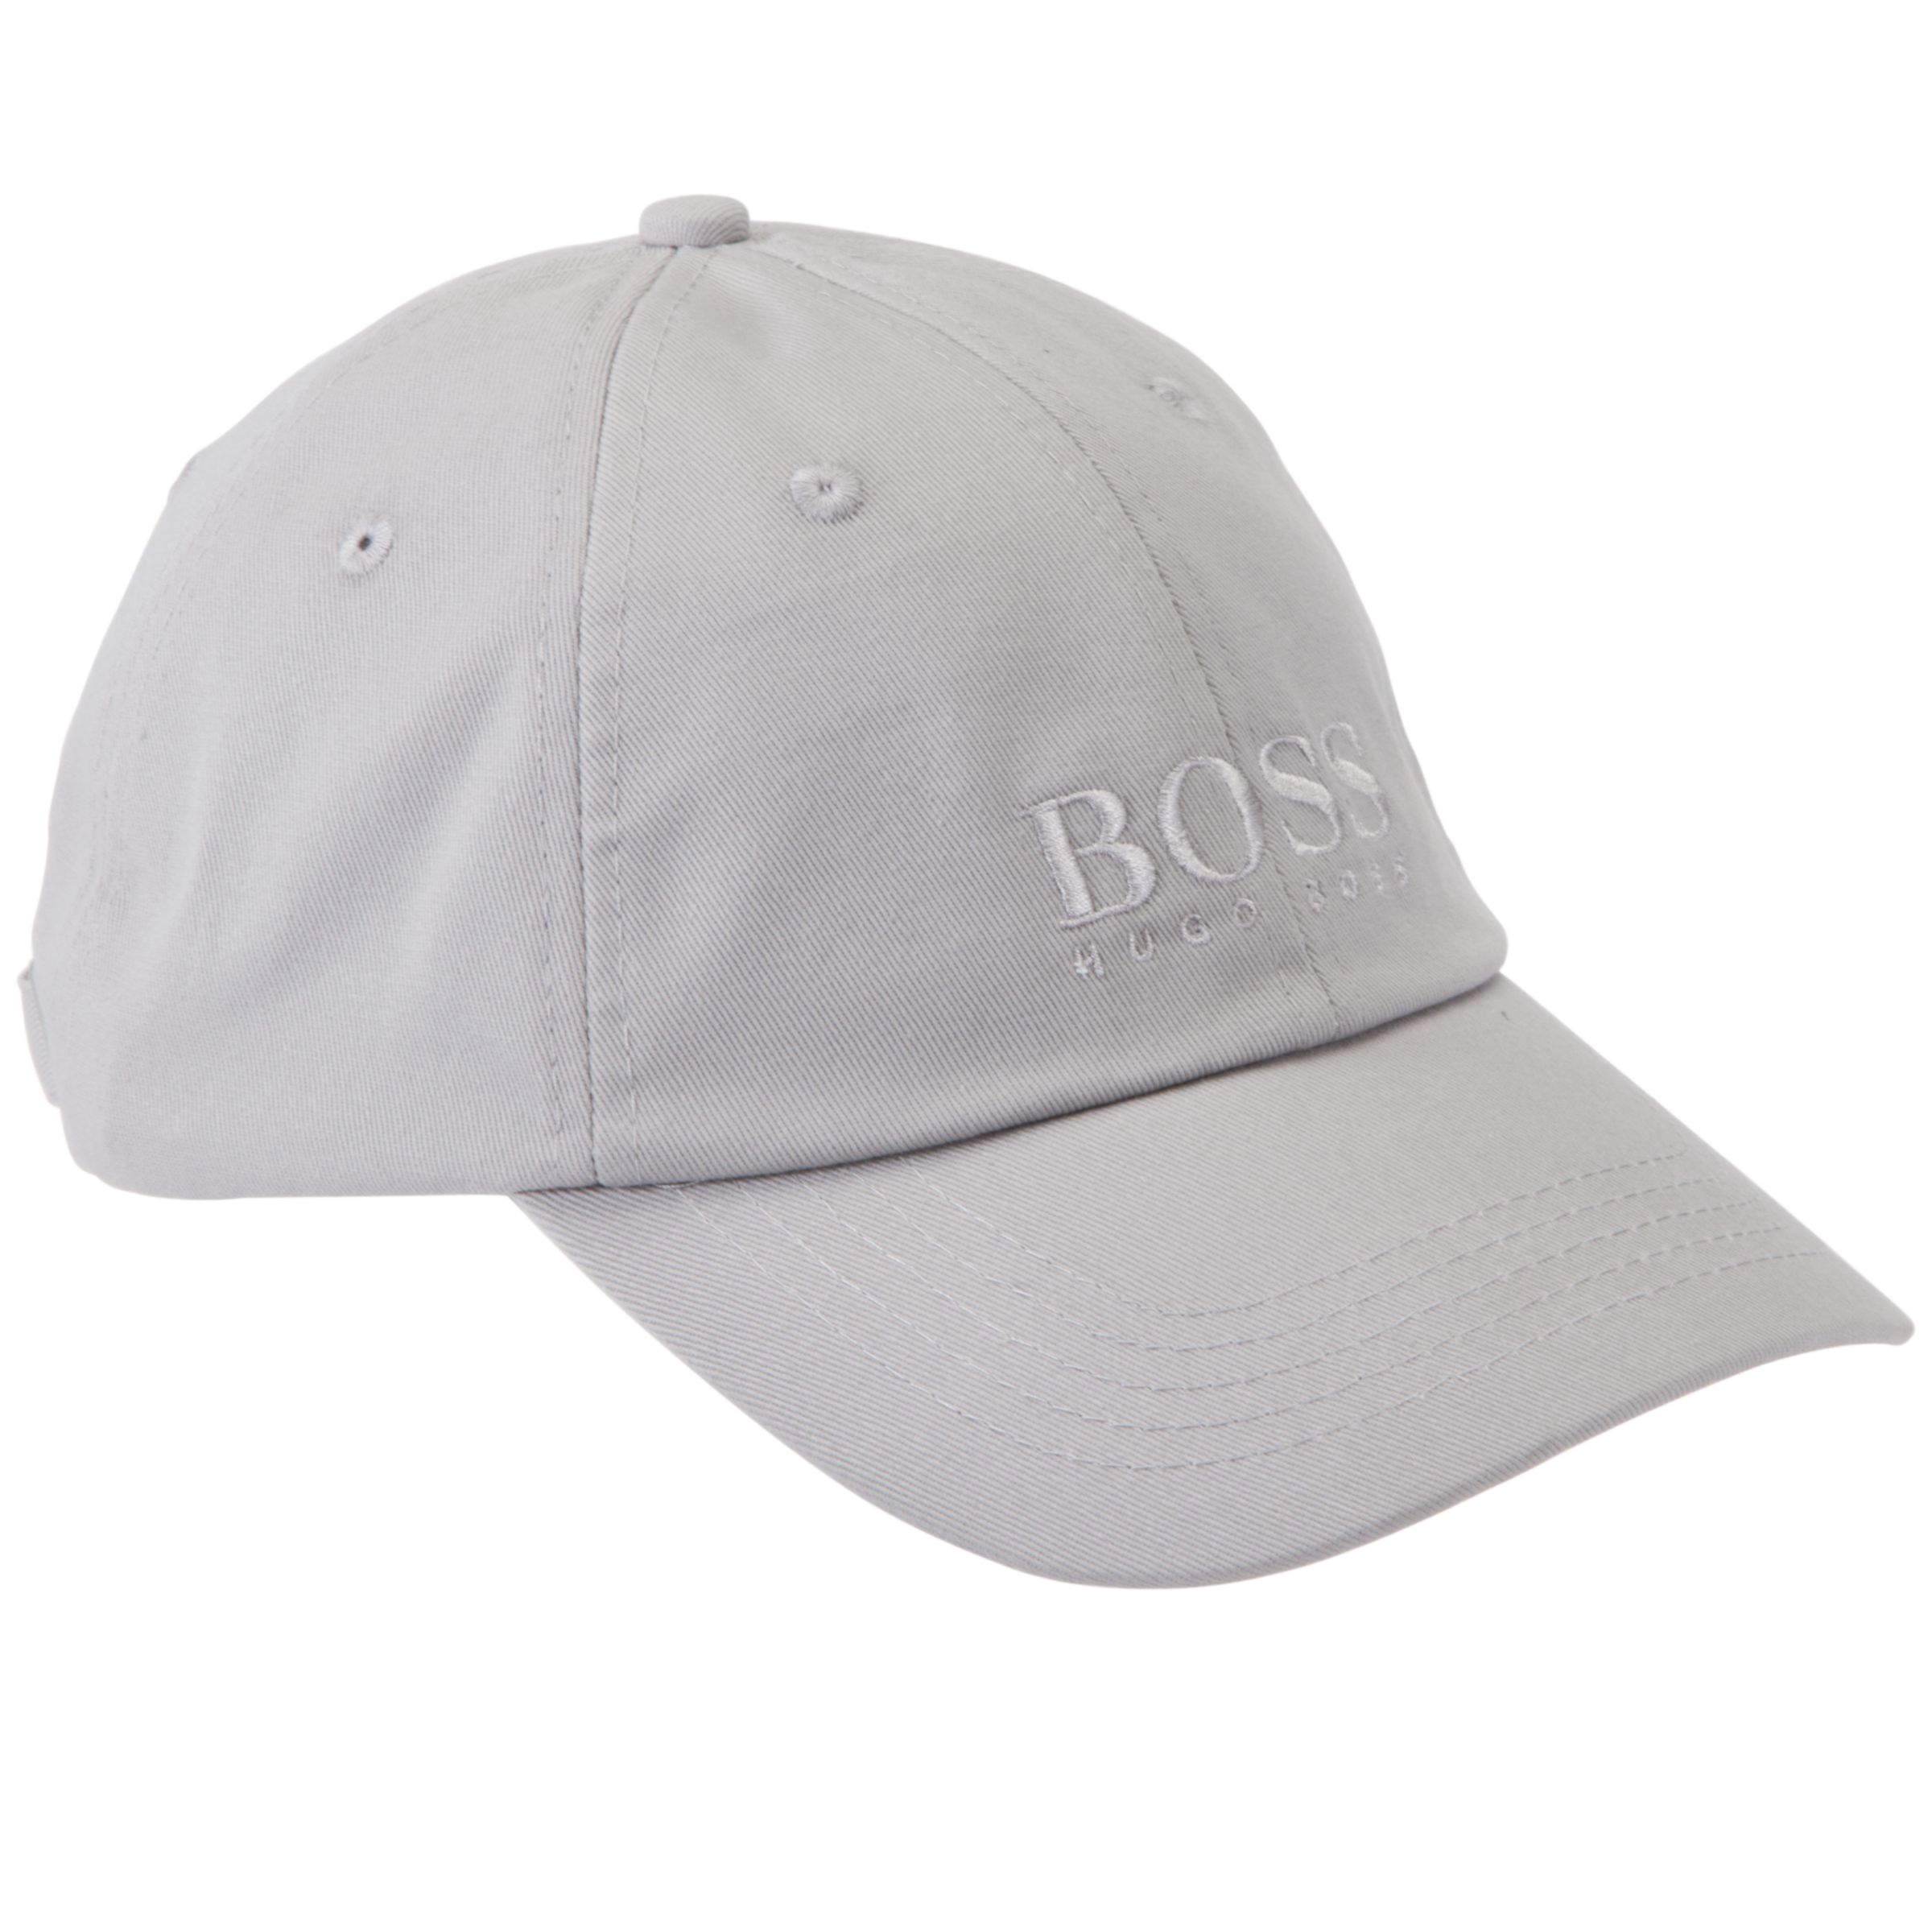 Hugo Boss Plain Baseball Cap, Grey